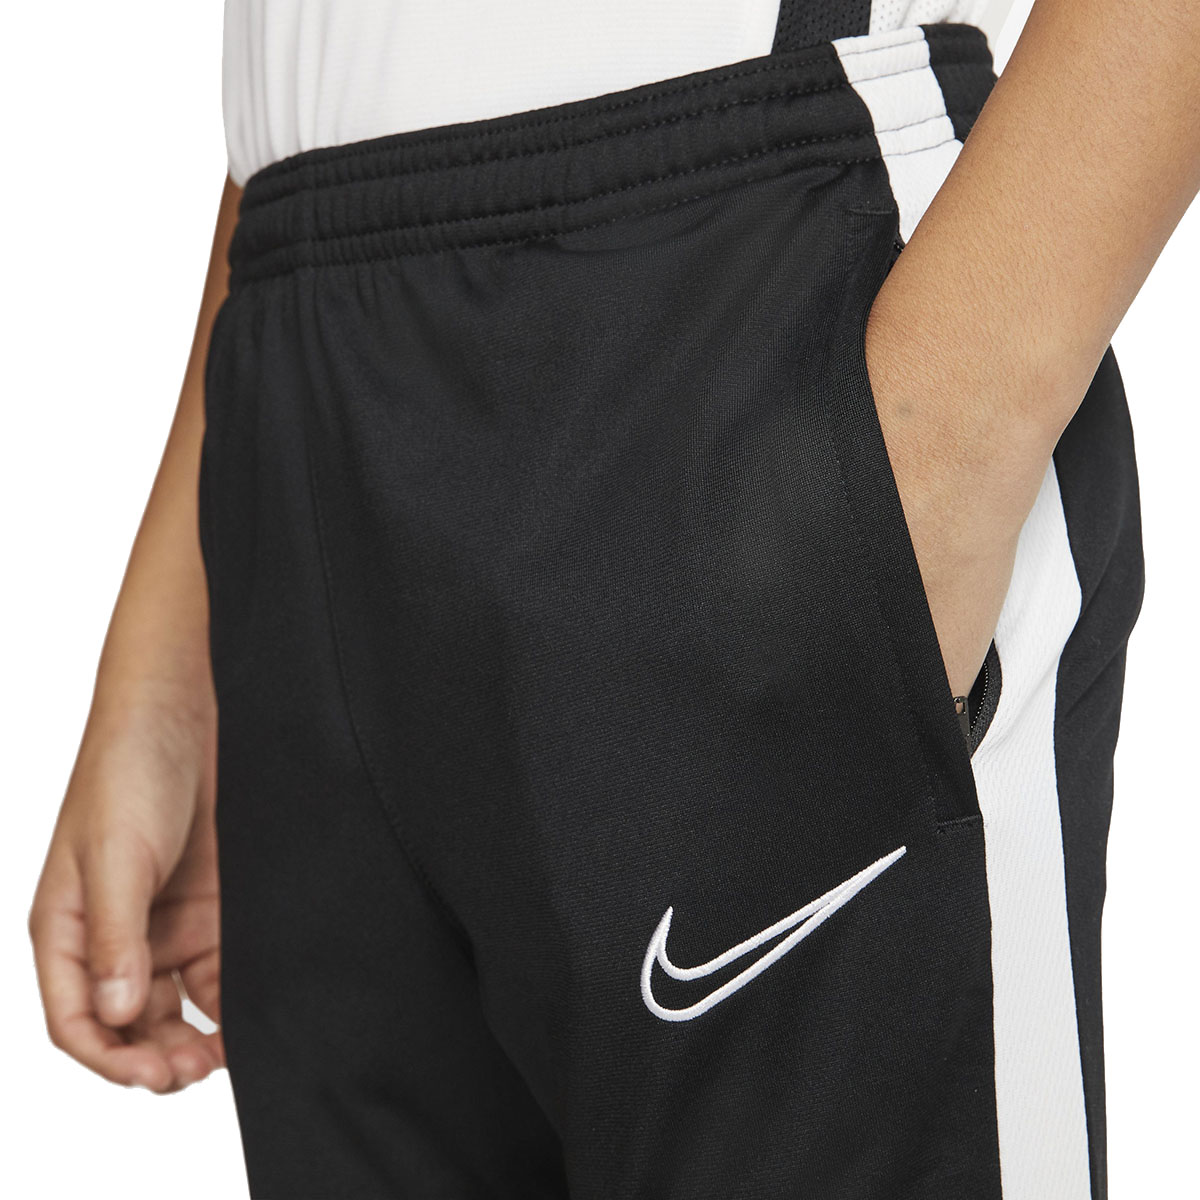 Pantalon Nike Academy Kpz Infantil | Dexter